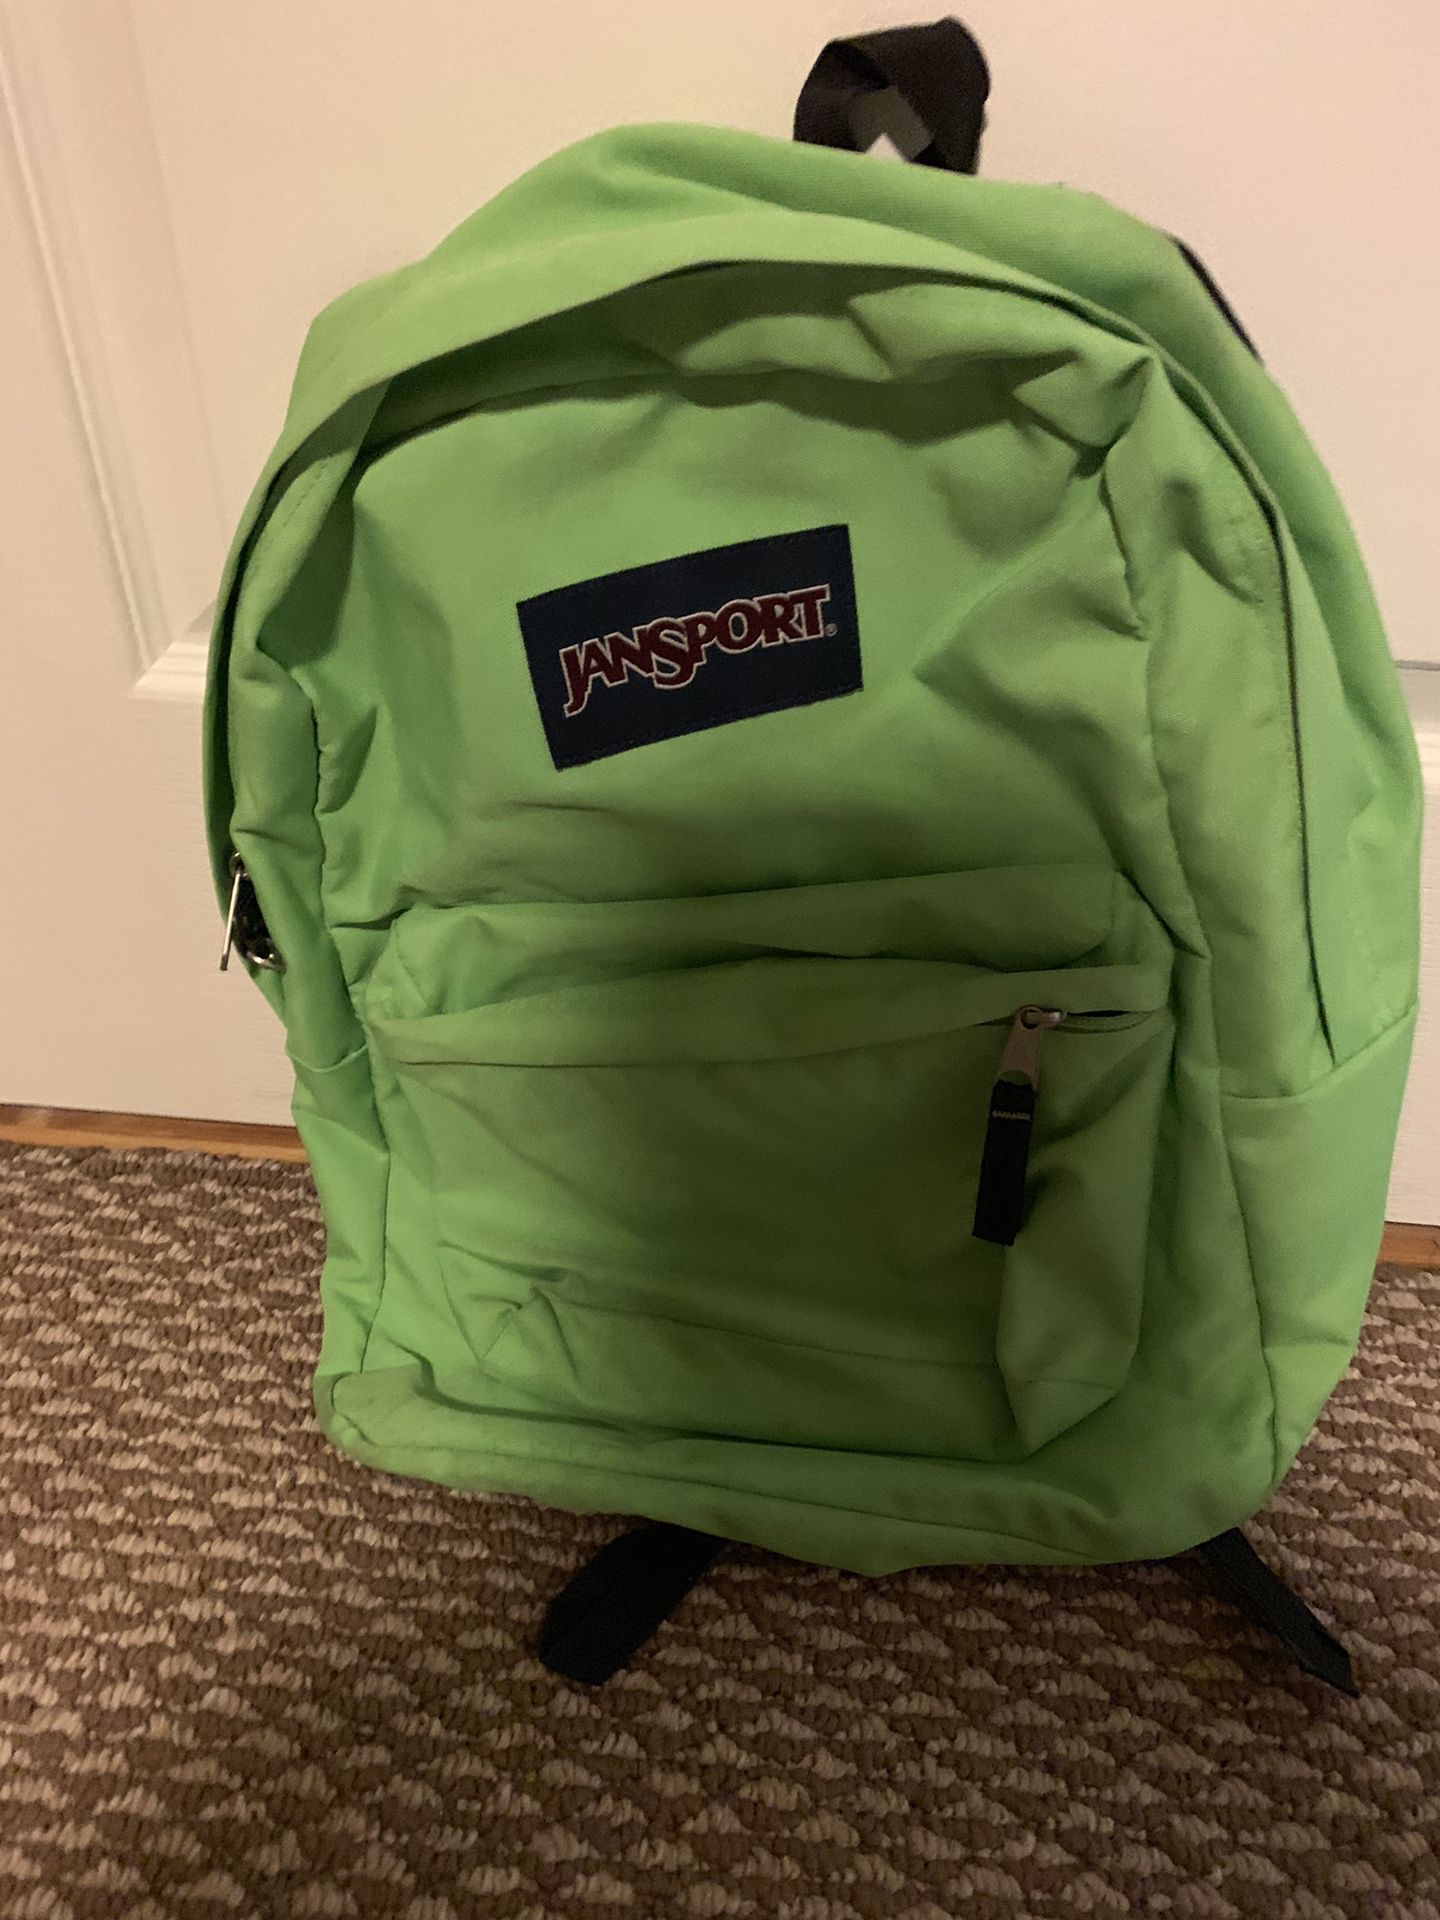 JANSPORT single zipper full size backpack